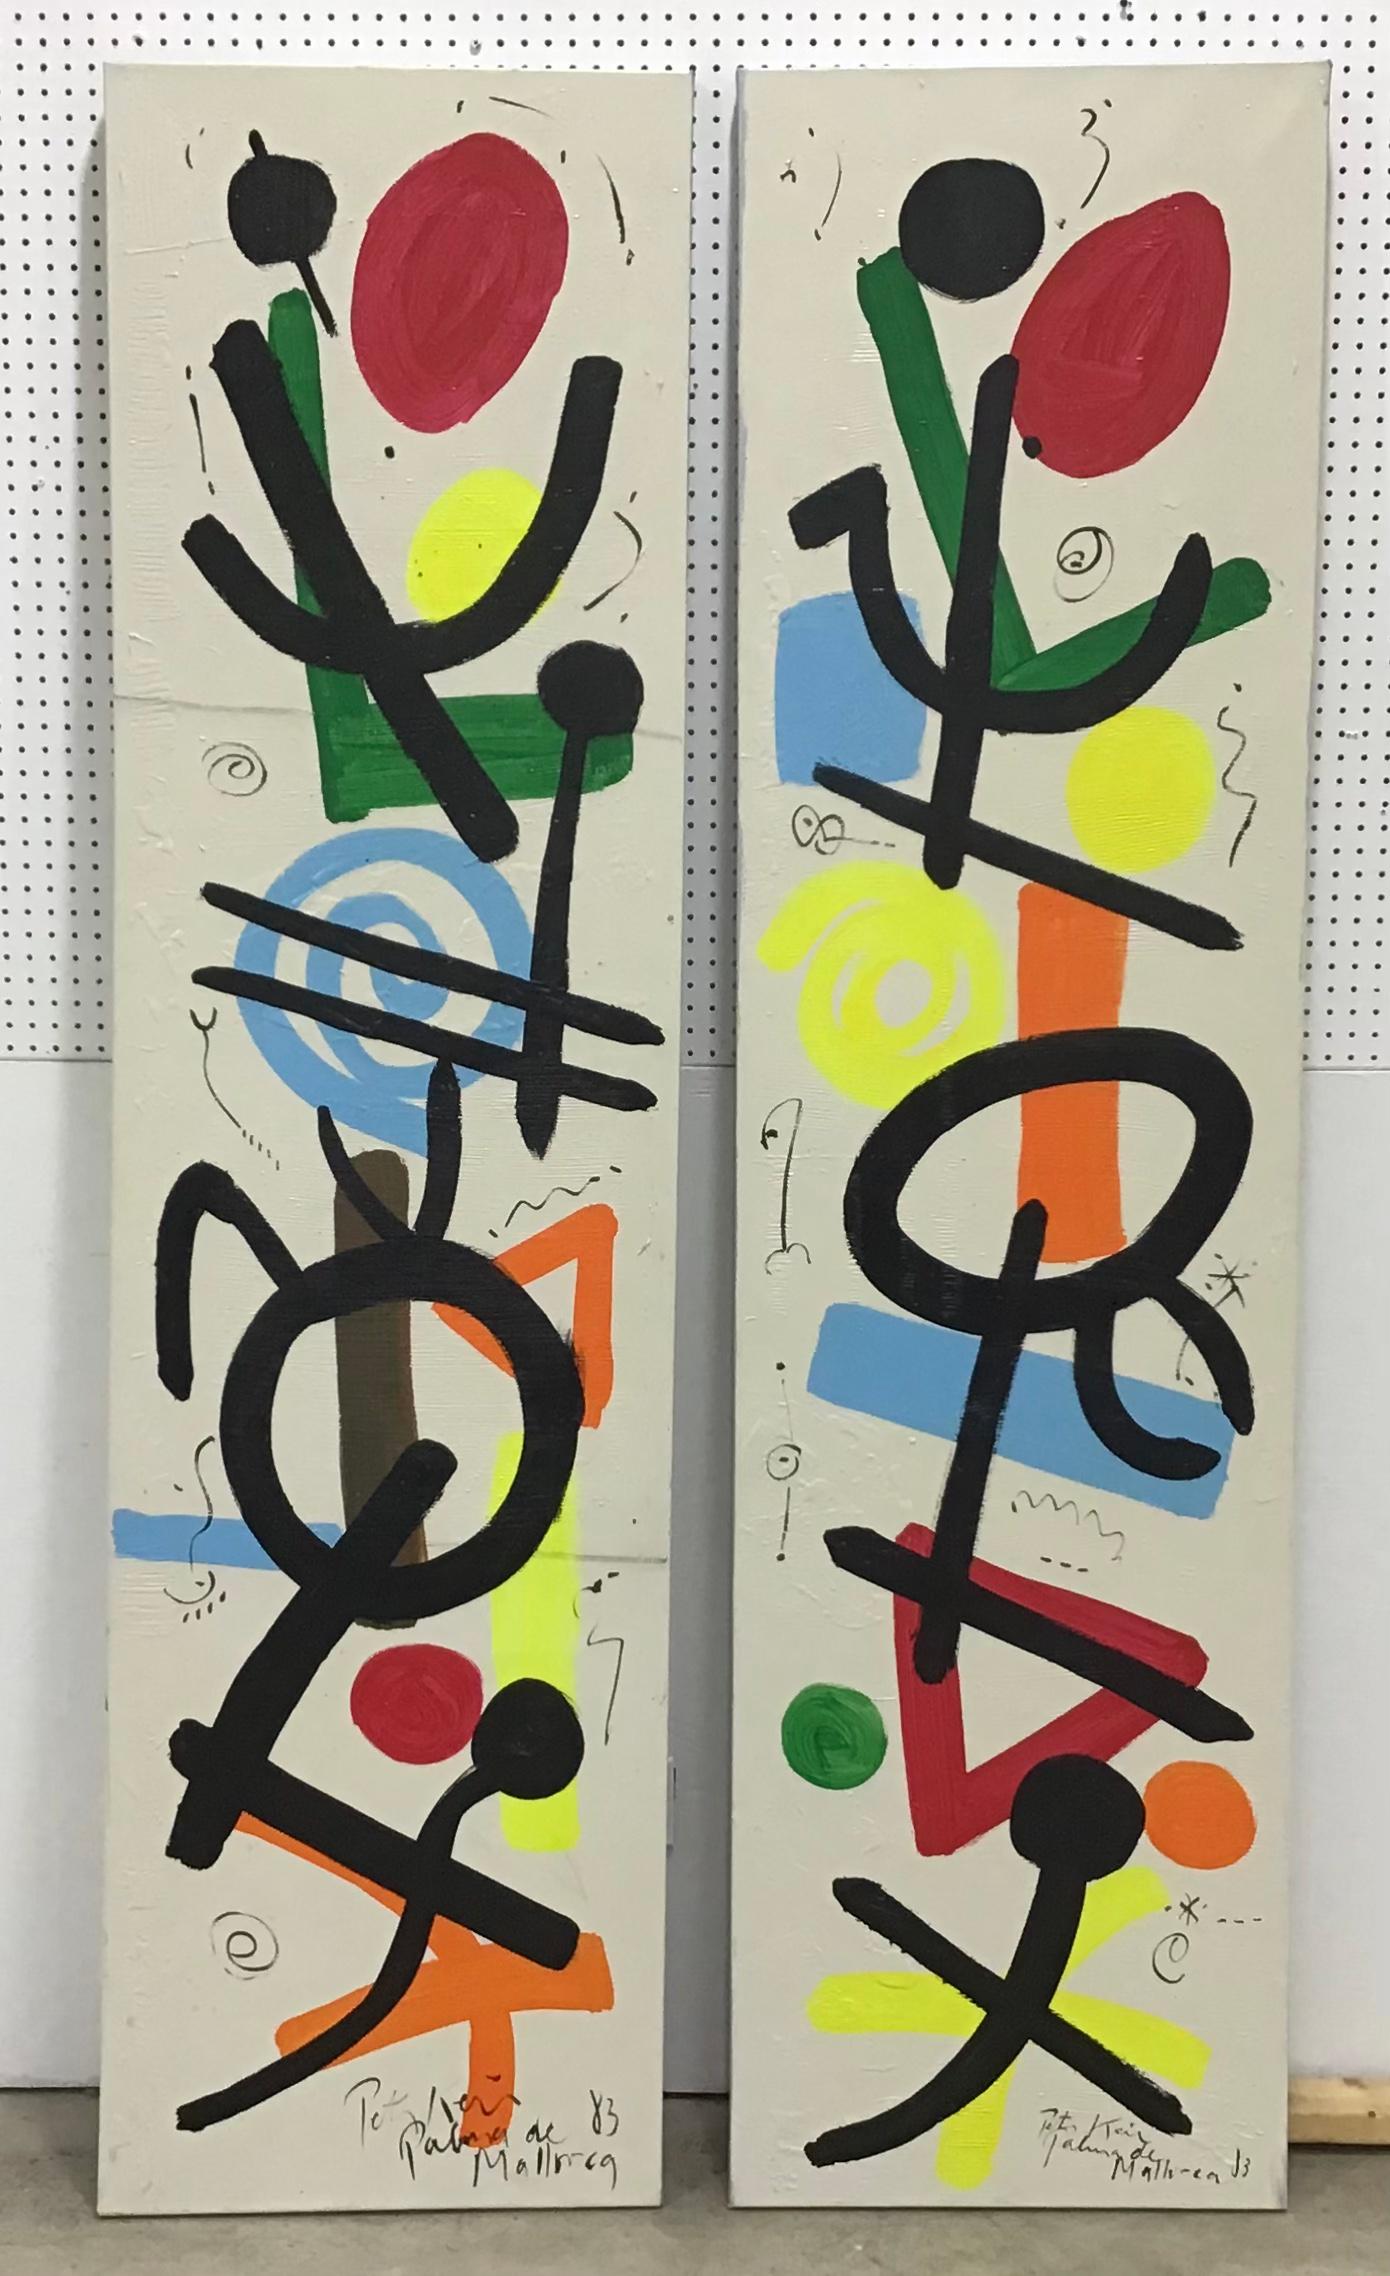 Peter Keil est un artiste allemand qui se concentre principalement sur l'expressionnisme abstrait. Keil a peint avec certains des plus grands, dont Joan Miró, Andy Warhol et Pablo Picasso, pour n'en citer que quelques-uns.
Il s'agit d'une grande